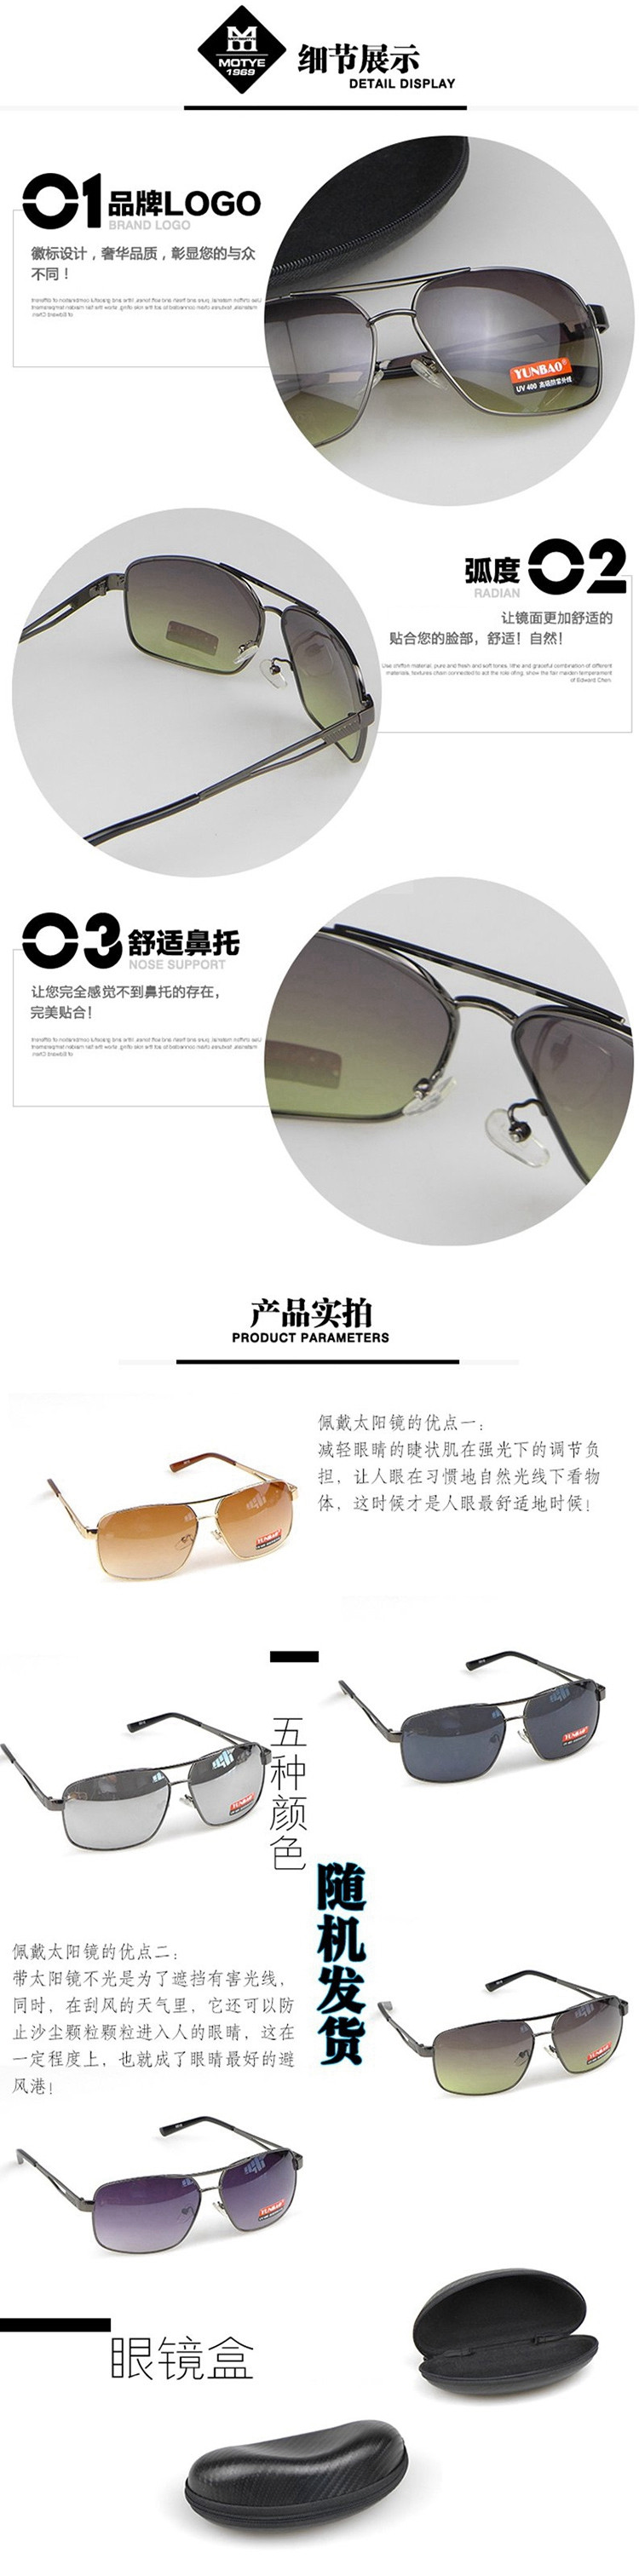 云豹 时尚休闲太阳镜 5815 镜片颜色随机 UV400防紫外线 送眼镜盒 户外男士遮阳镜墨镜